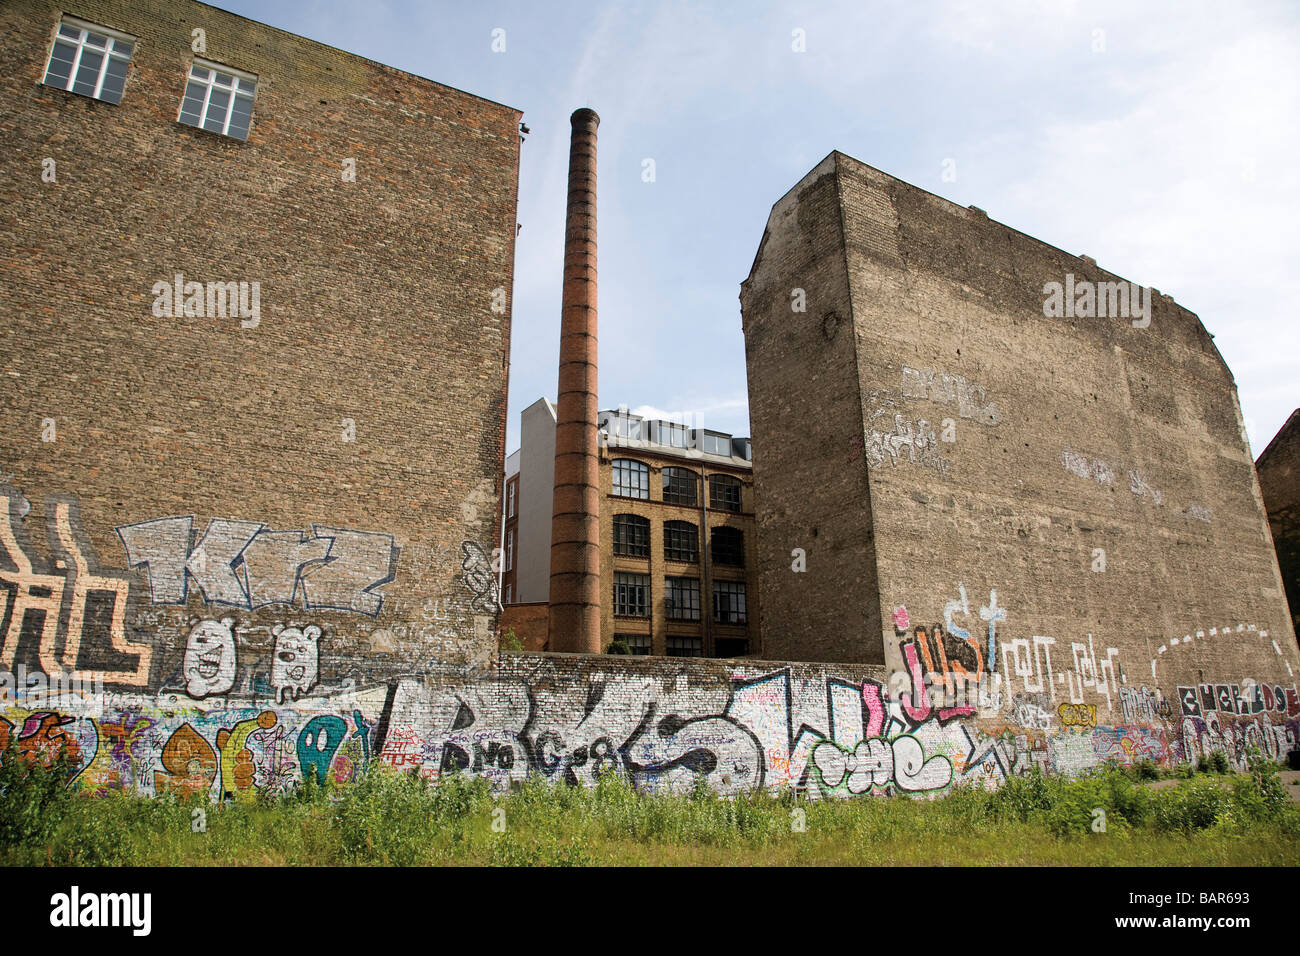 Germania, Berlino, vecchio sito di fabbrica, i graffiti sulla parete Foto Stock